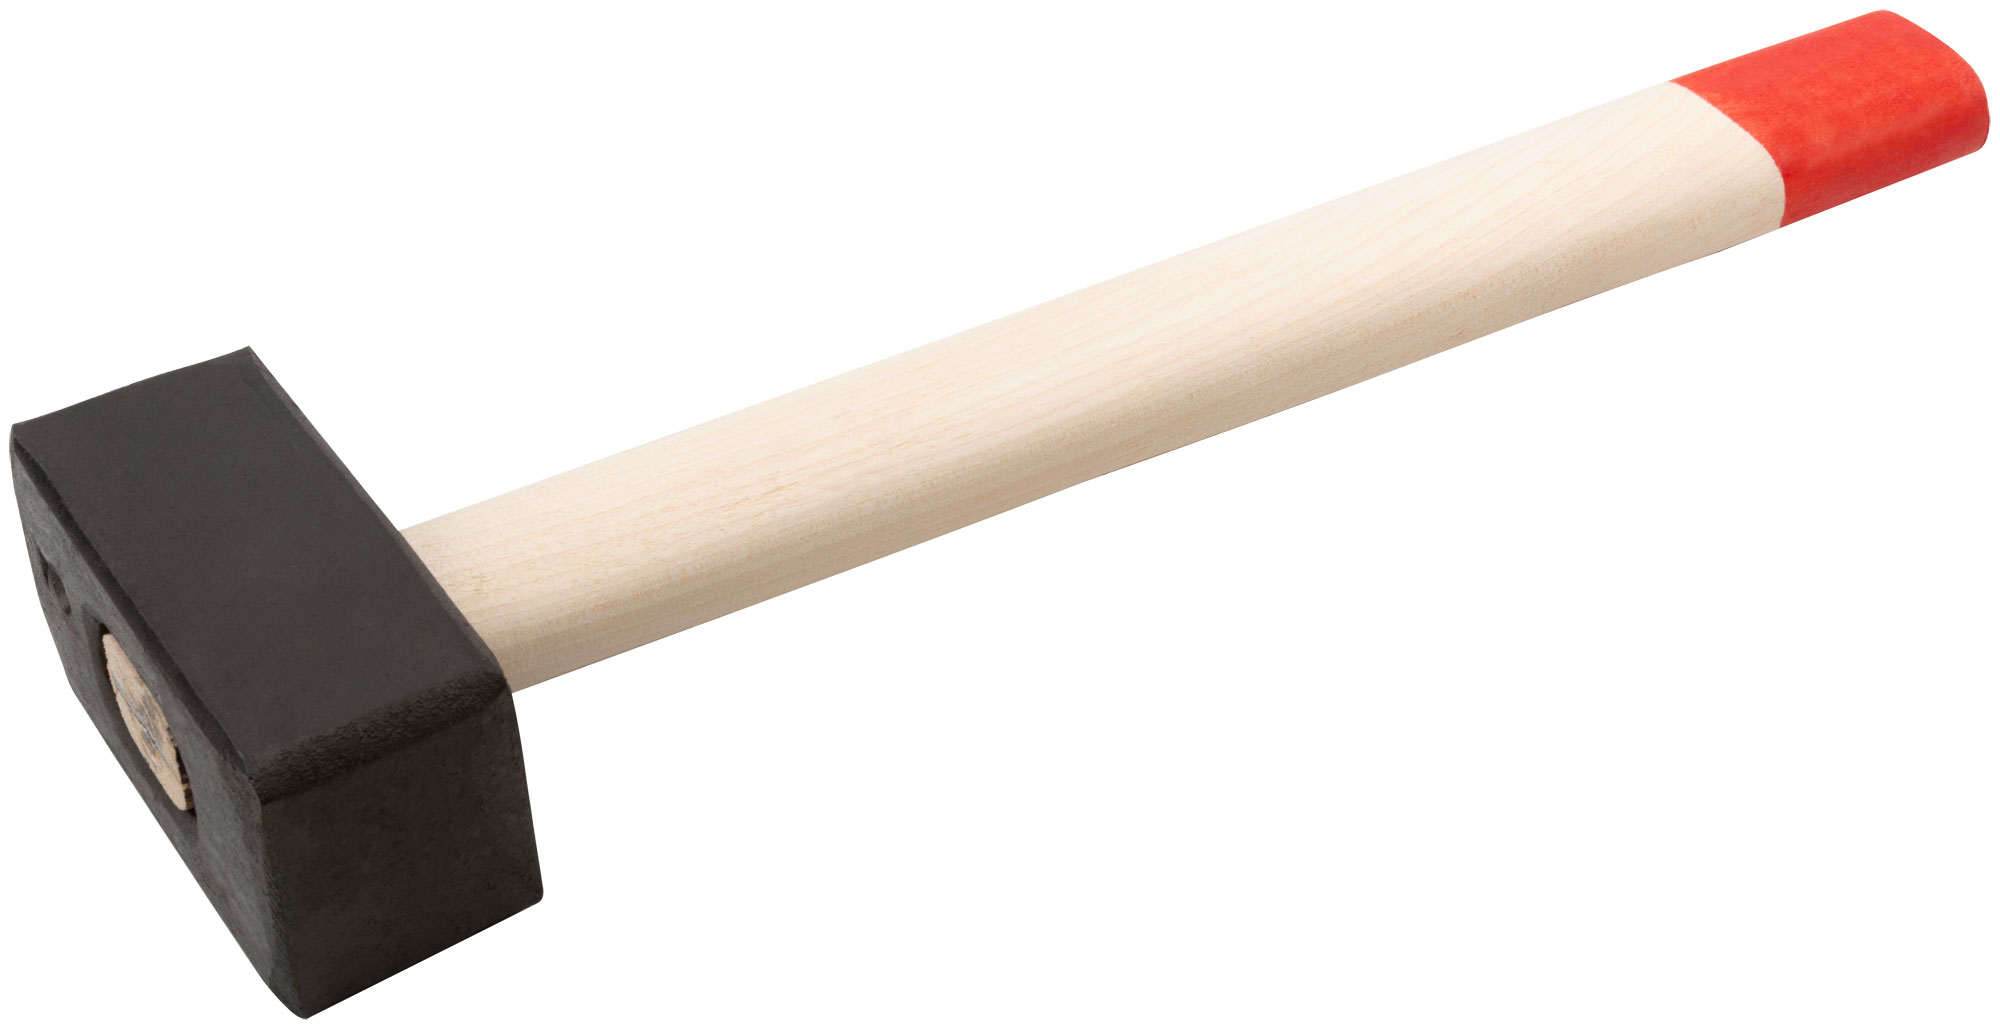 Кувалда кованая в сборе, деревянная ручка  2 кг